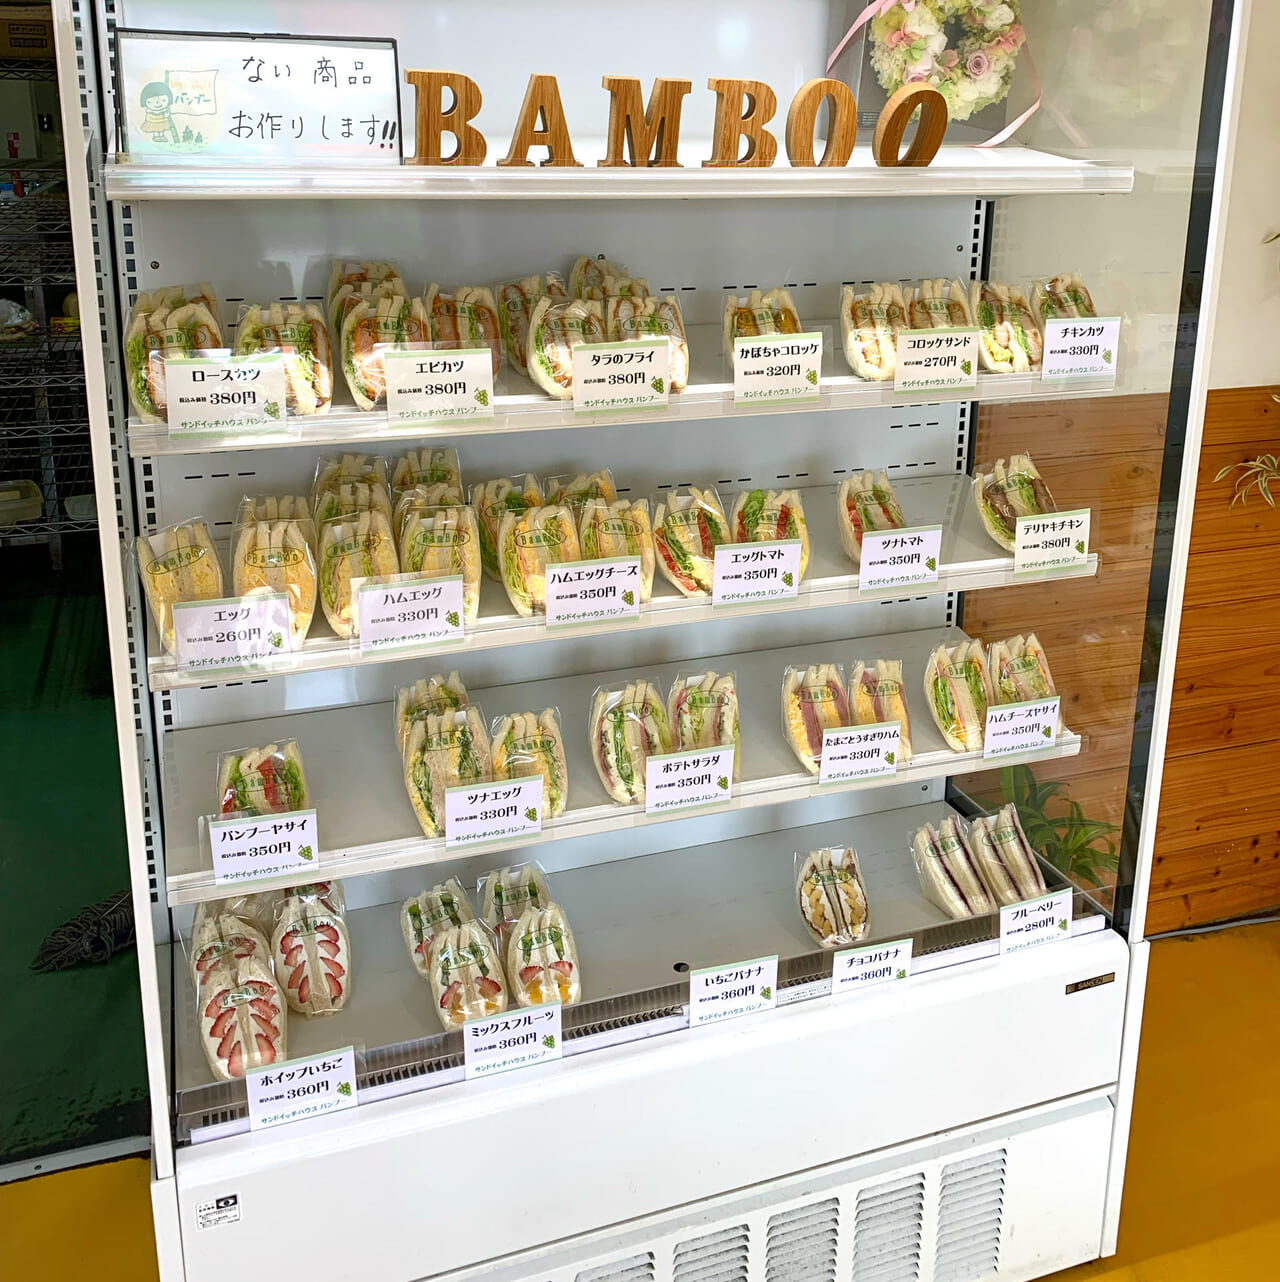 美須賀町にある「サンドウィッチハウス バンブー」は30年近くユーザーから愛されるお店です!!